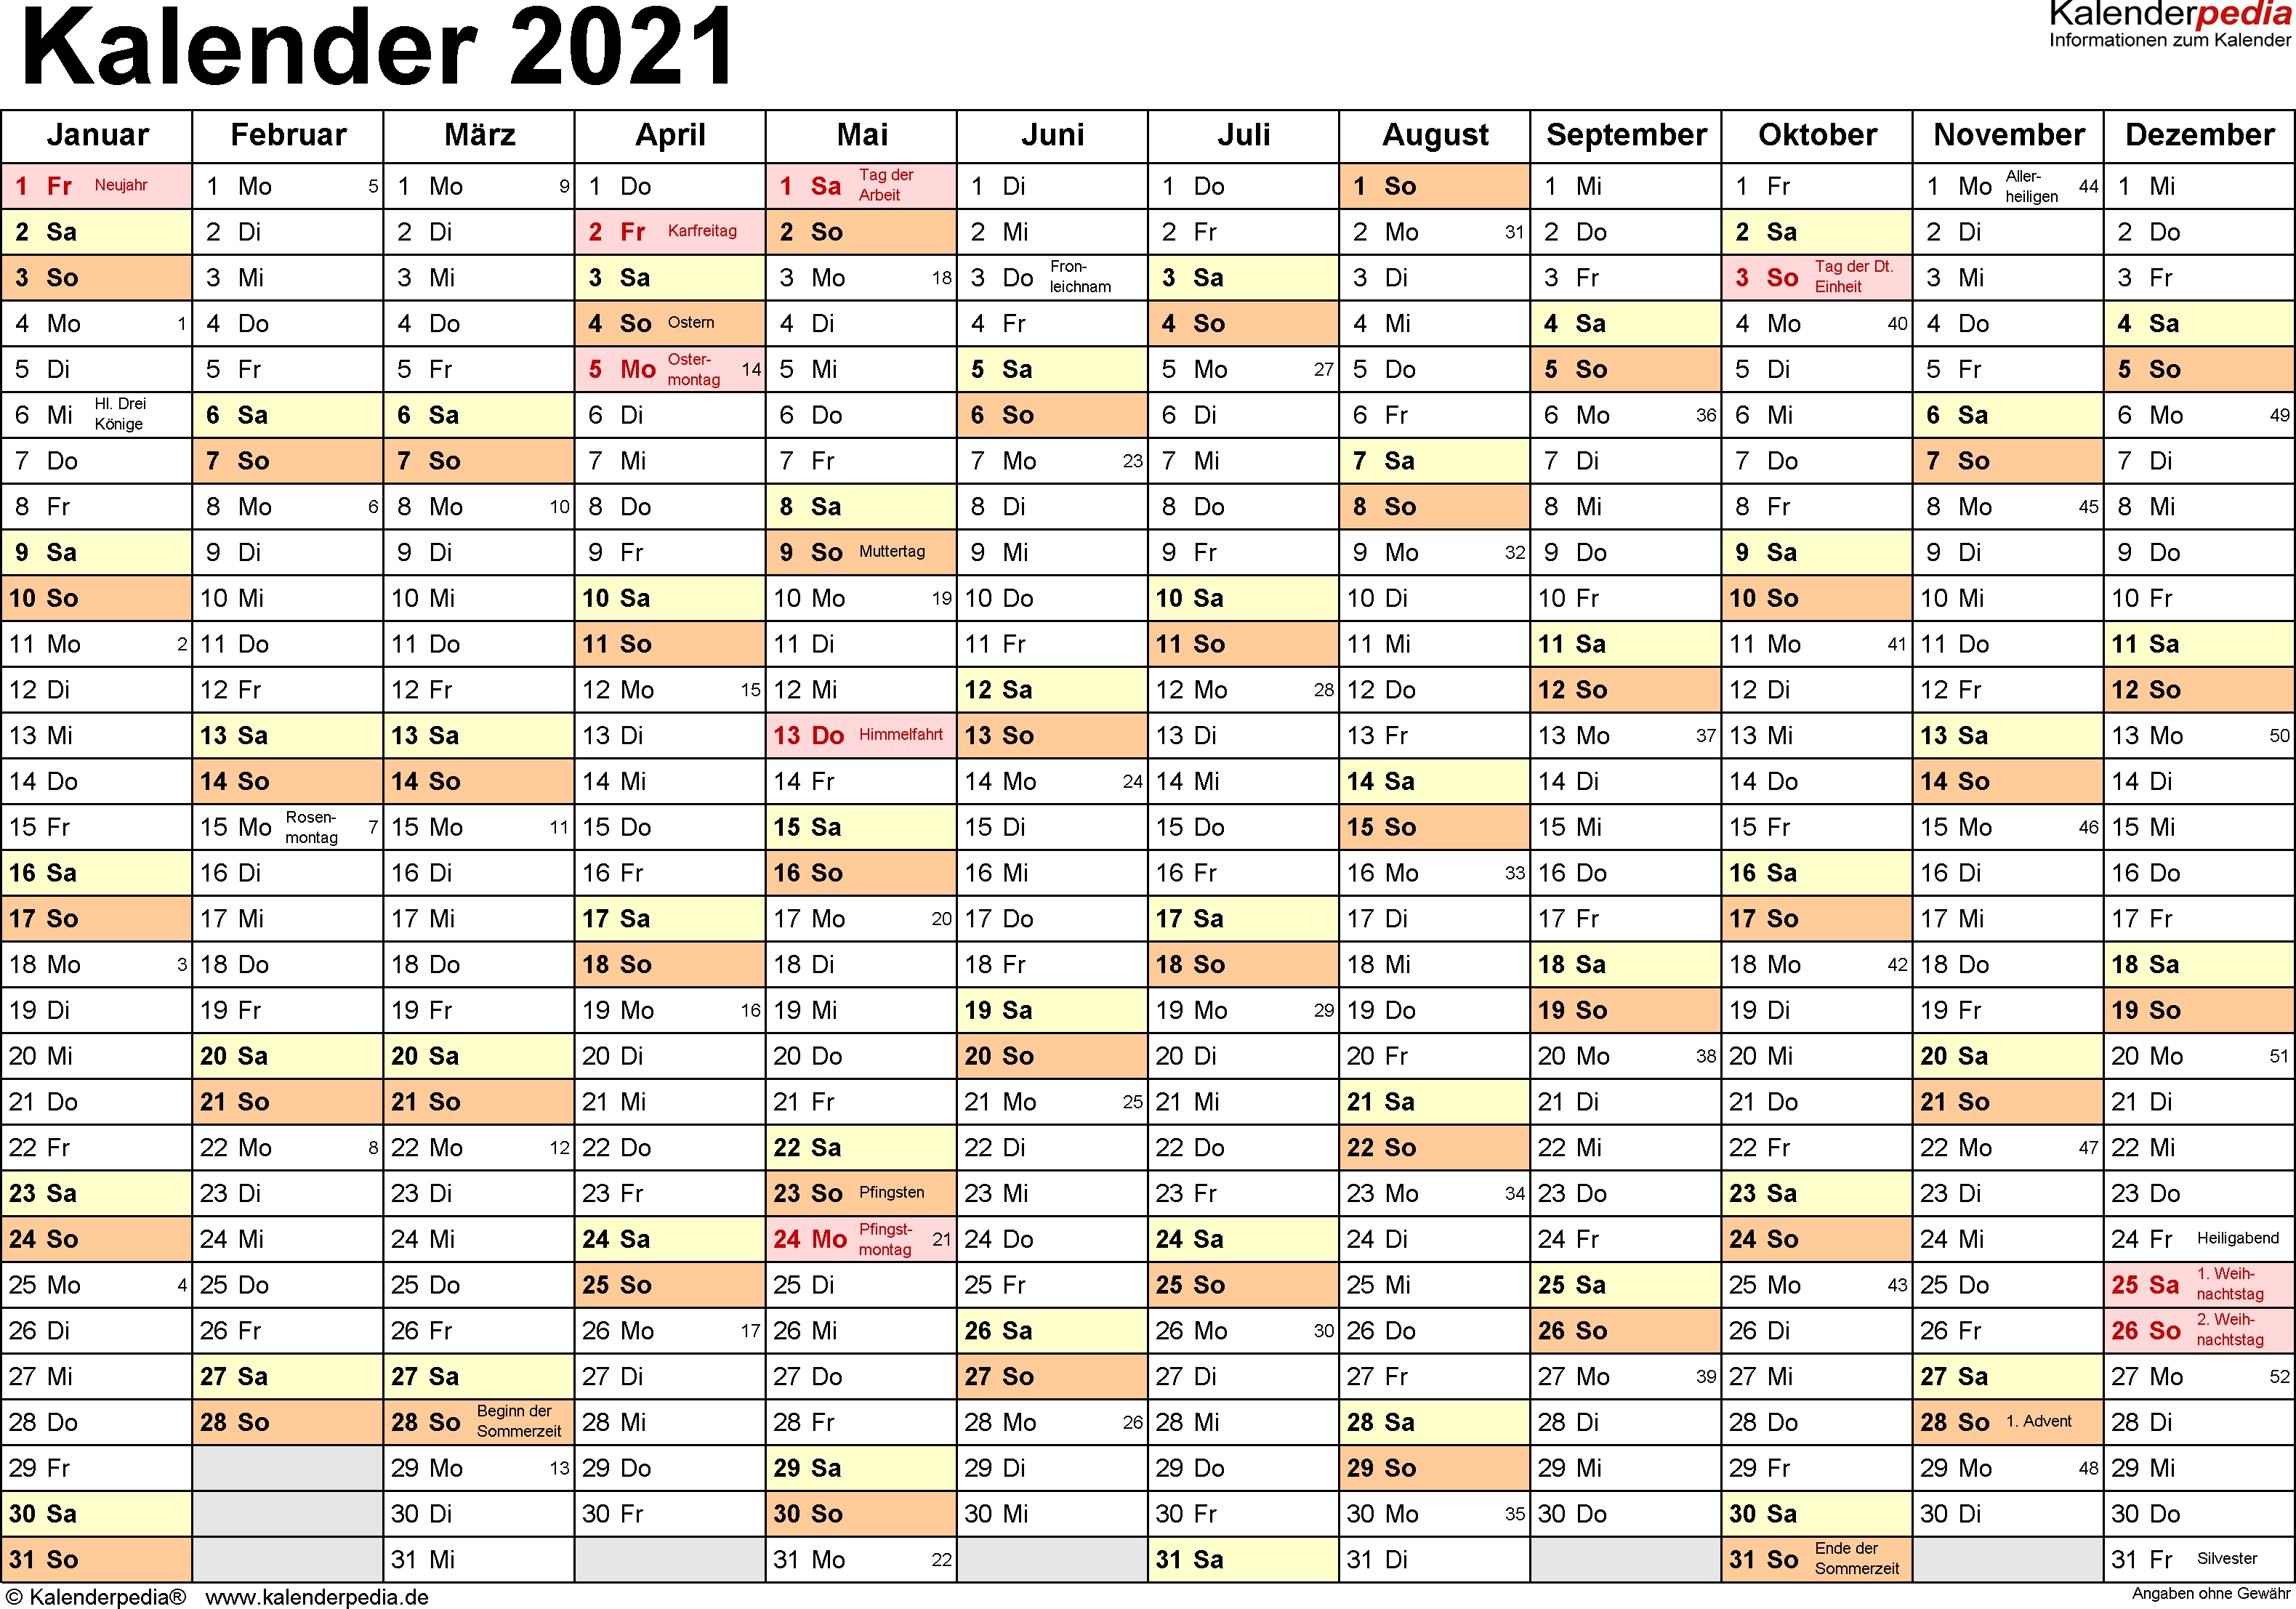 Kalender 2021 Zum Ausdrucken Als Pdf (17 Vorlagen, Kostenlos)  Kalender 2021 Zum Ausdrucken Kostenlos